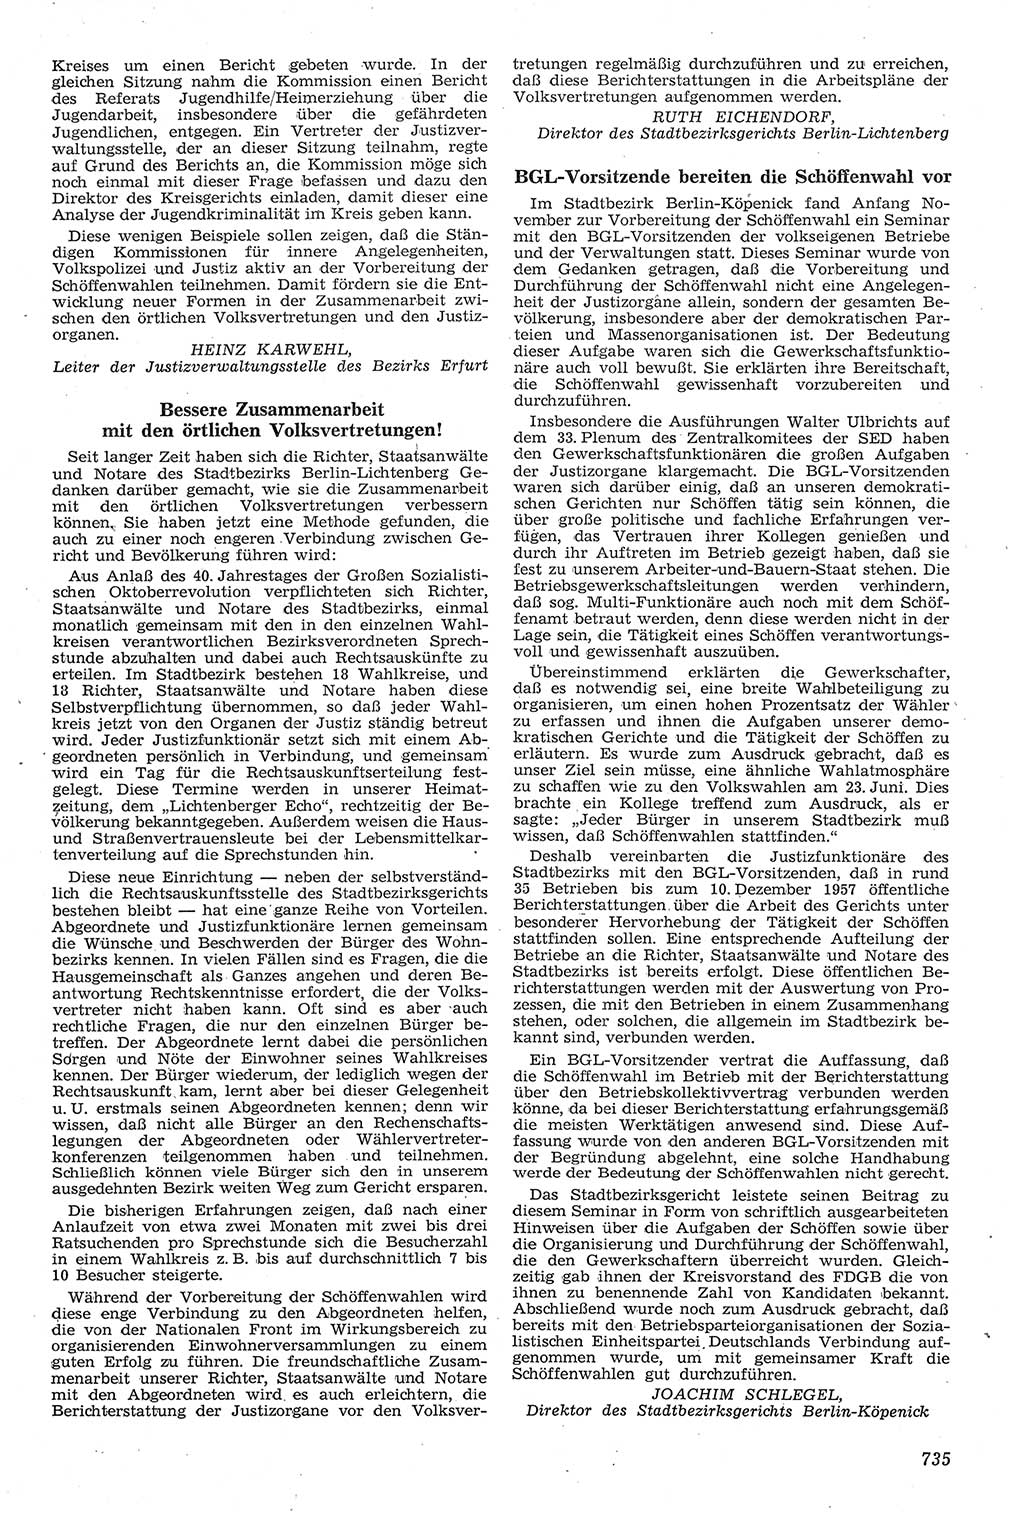 Neue Justiz (NJ), Zeitschrift für Recht und Rechtswissenschaft [Deutsche Demokratische Republik (DDR)], 11. Jahrgang 1957, Seite 735 (NJ DDR 1957, S. 735)